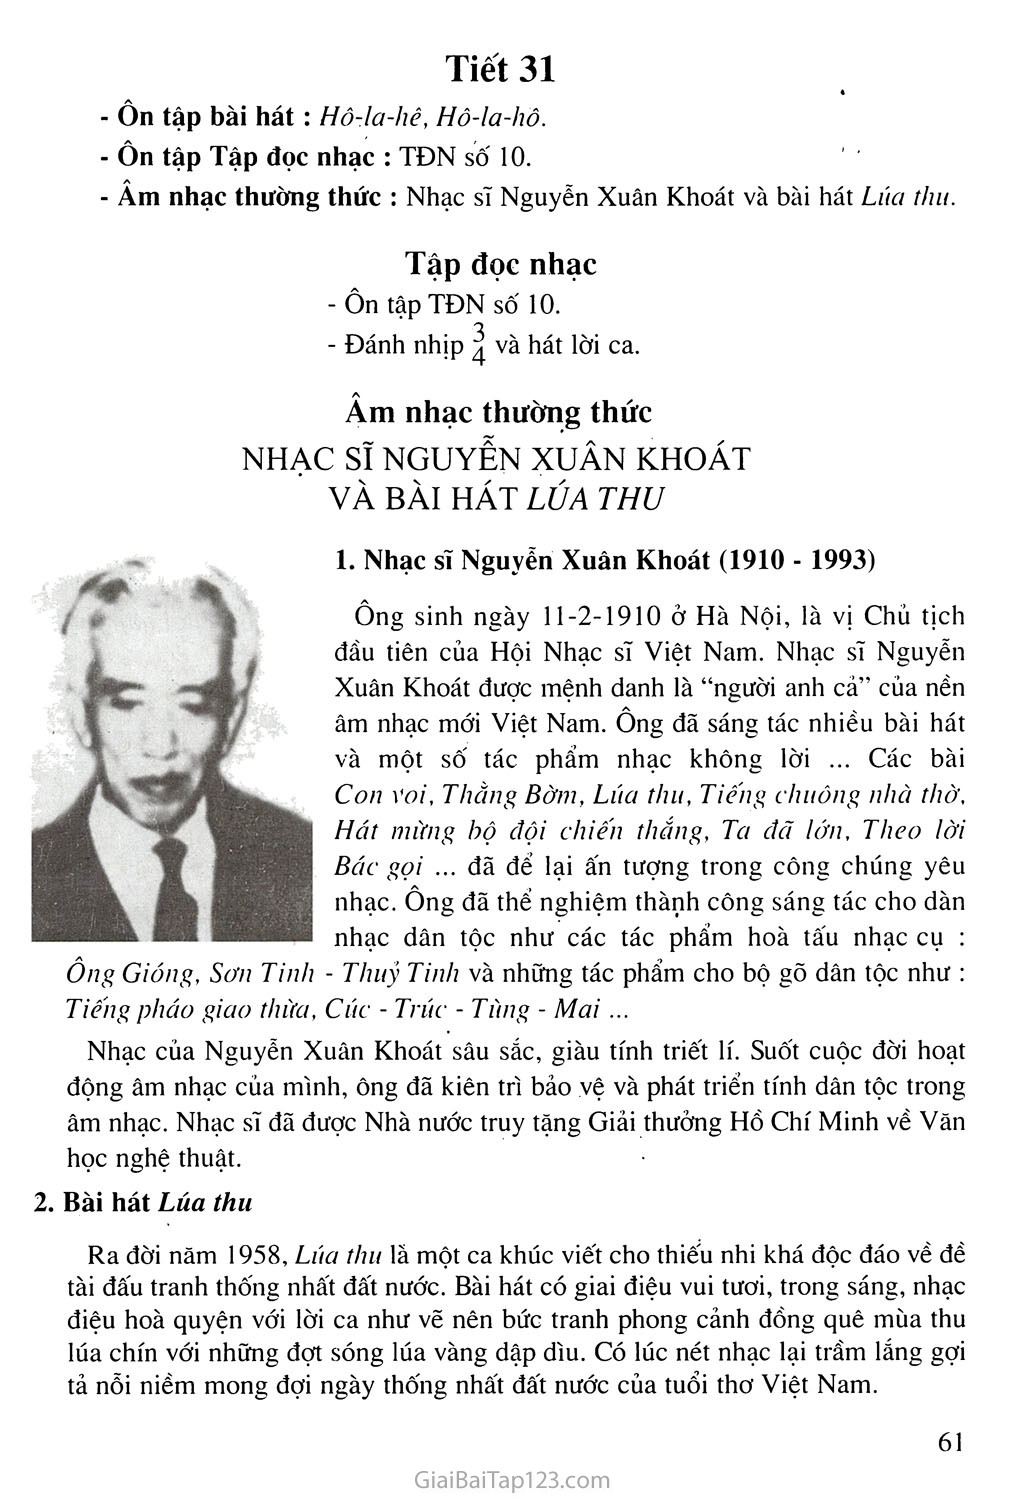 Tiết 31. Âm nhạc thưởng thức: Nhạc sĩ Nguyễn Xuân Khoát và bài hát Lúa thu trang 1